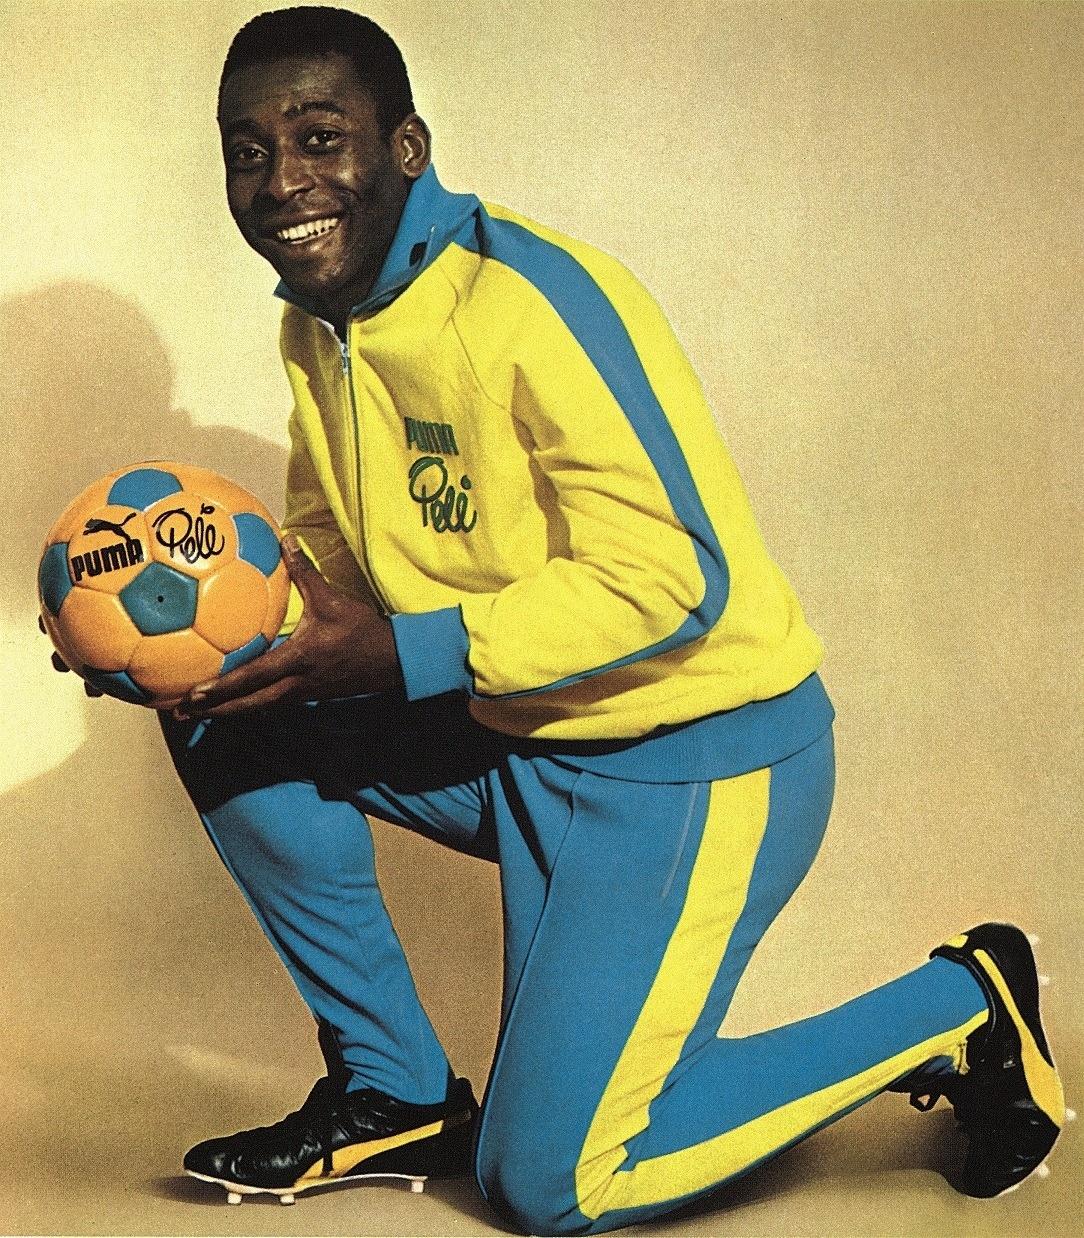 Quantas vezes Pelé foi eleito o melhor jogador do mundo? - Lance!